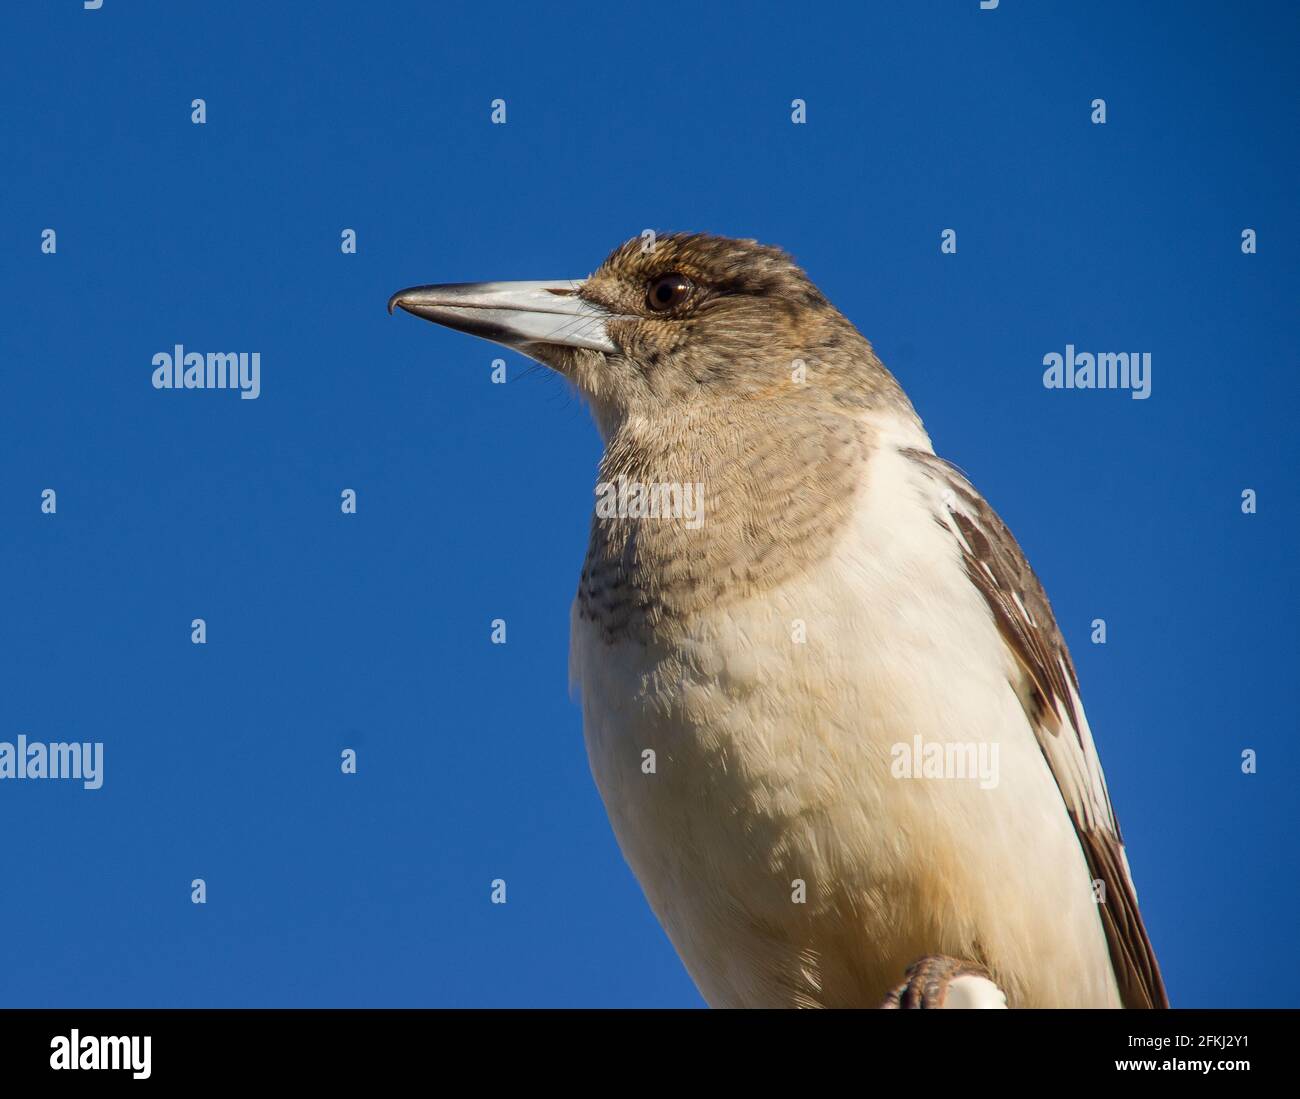 Gros plan du jeune oiseau-butcherbird à pied, Cracticus nigrogularis, perché sur le toit dans le Queensland, en Australie. Arrière-plan du ciel d'hiver bleu clair. Copier l'espace Banque D'Images